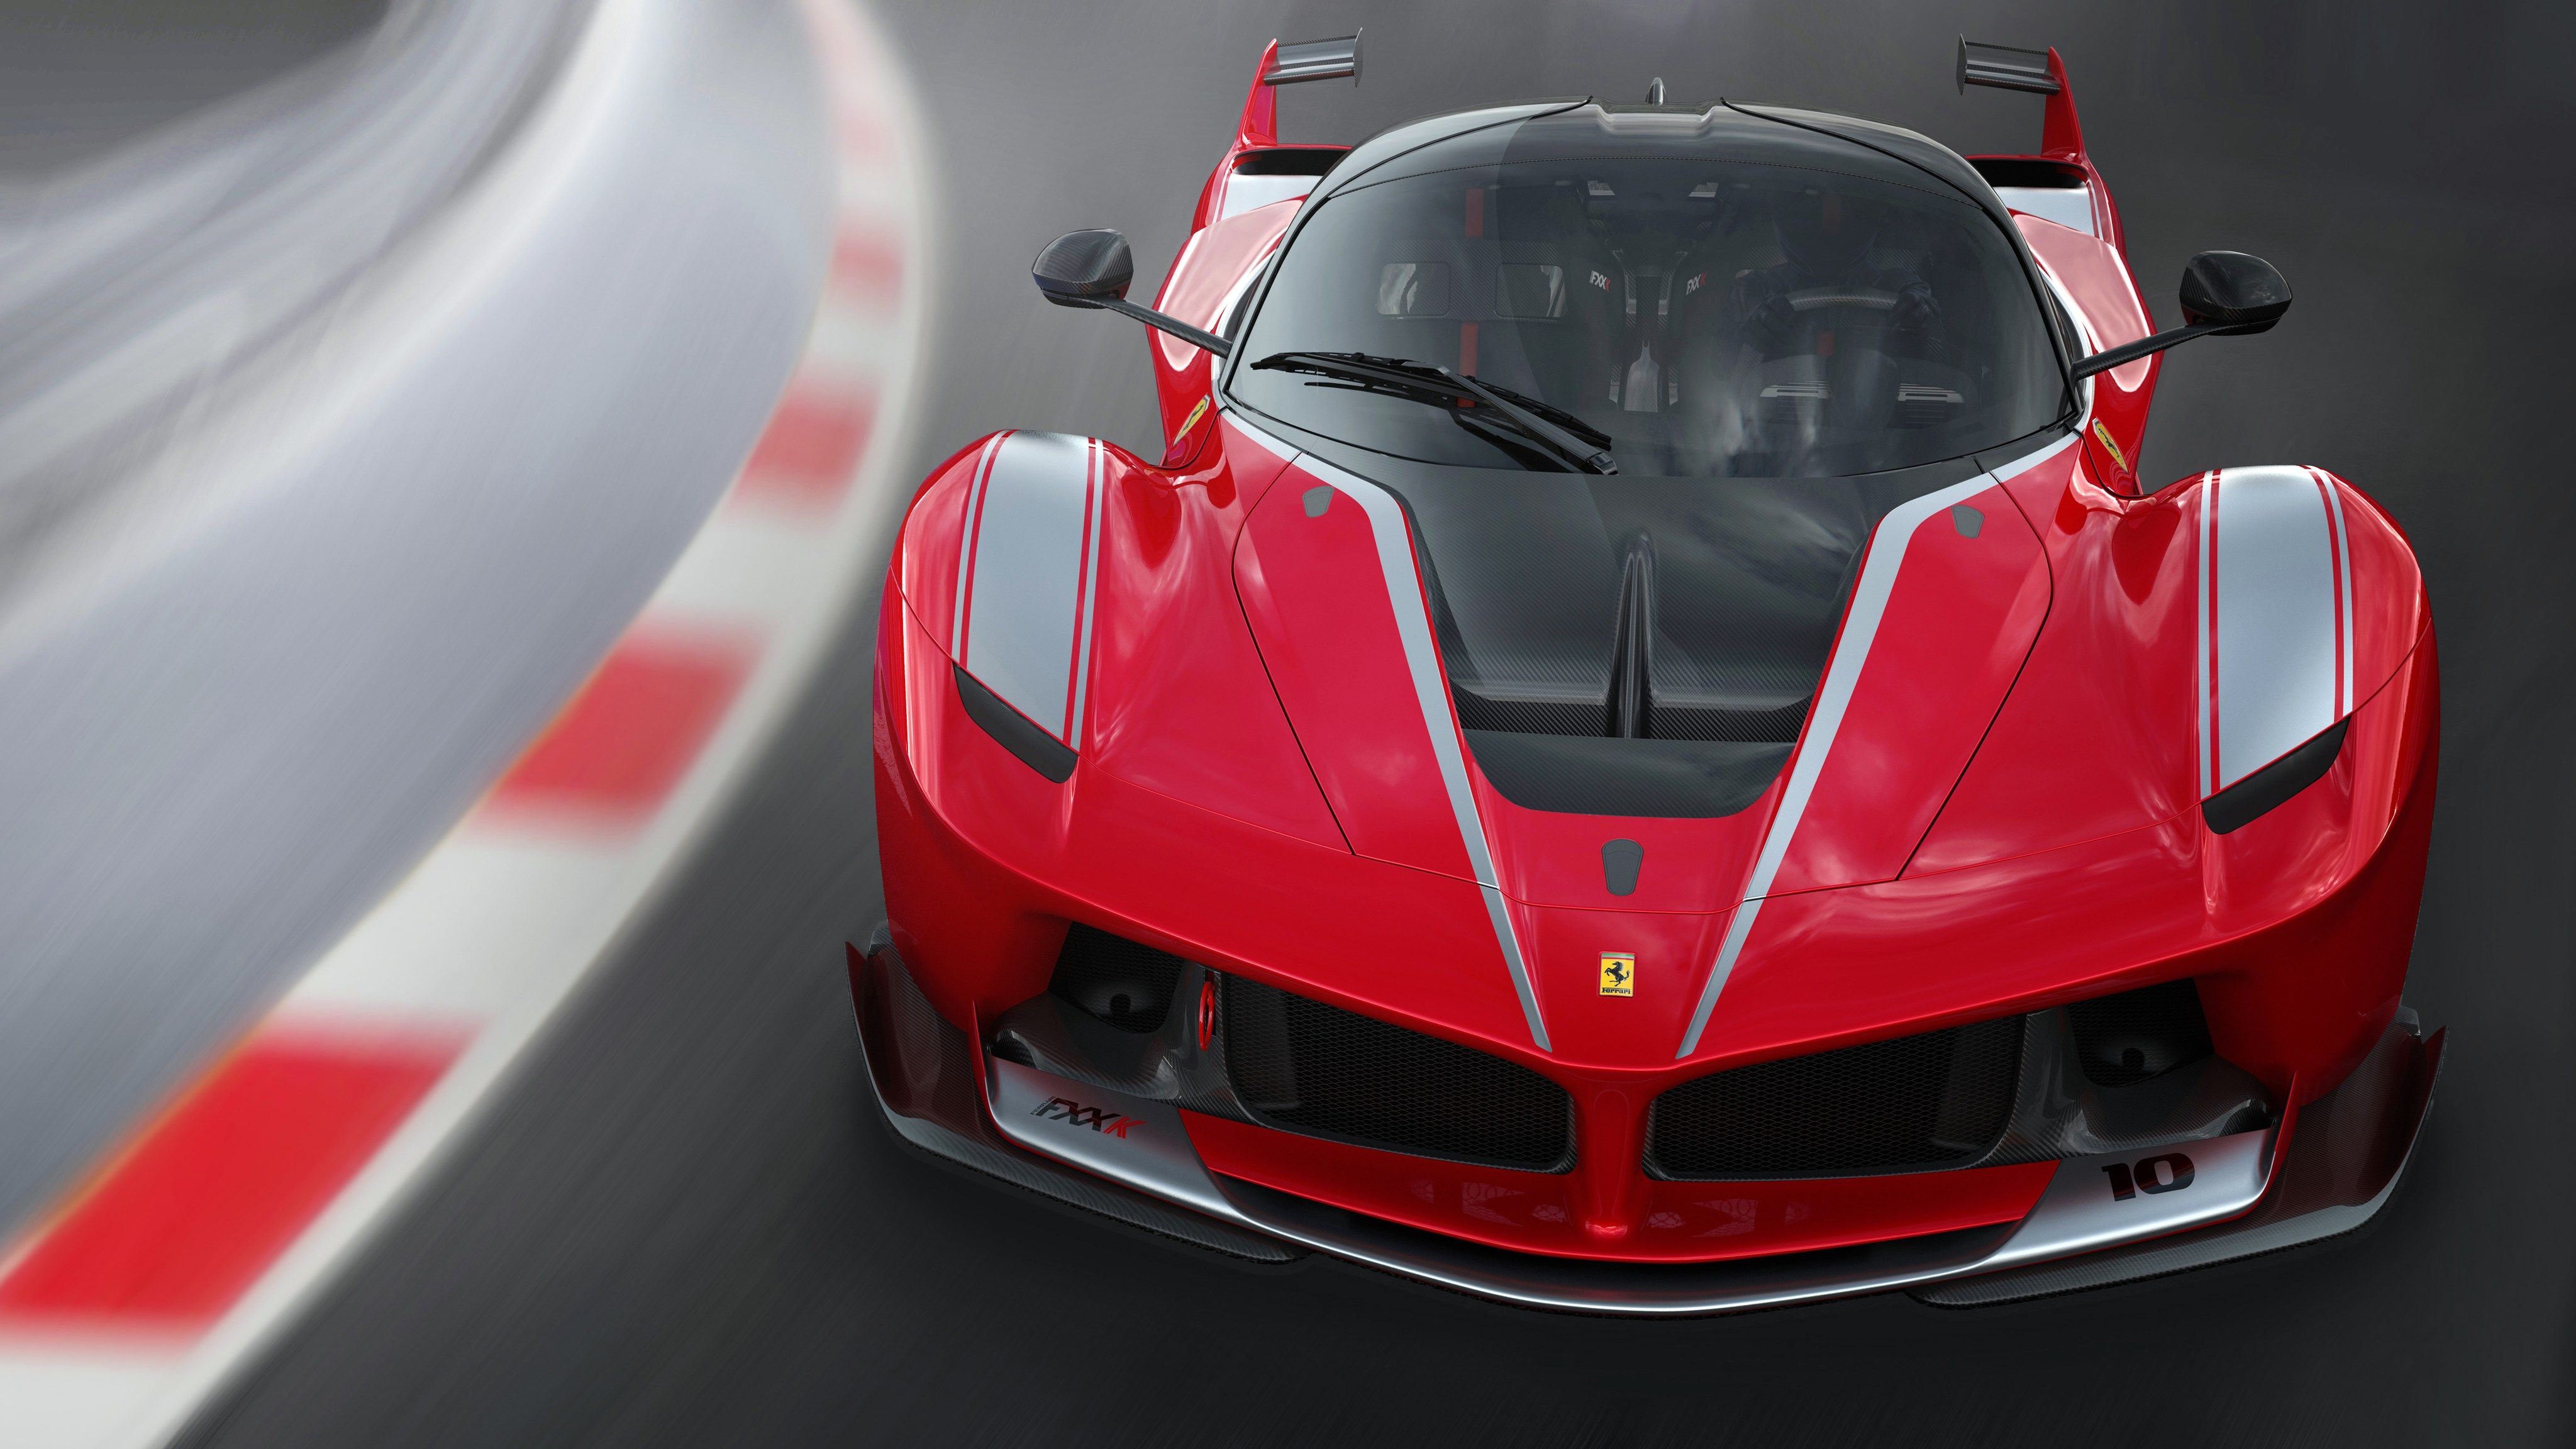 Ferrari FXX K, HD Cars, 4k Wallpaper, Image, Background